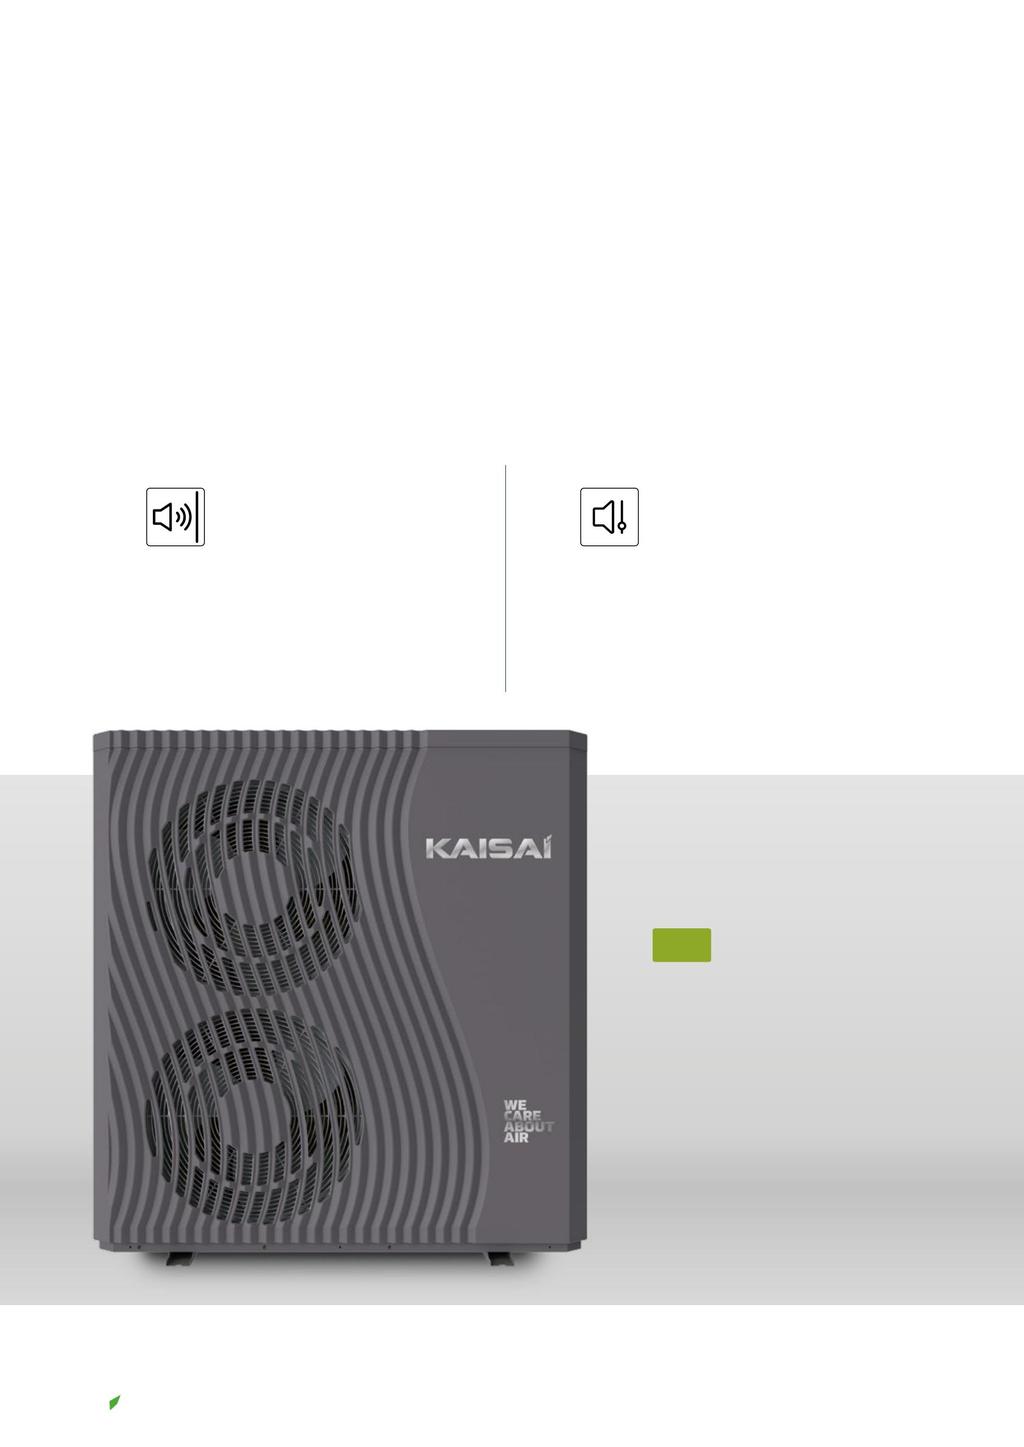 Moderní technologií Kaisai se věnuje vytváření super tichého provozního prostředí pro uživatele.